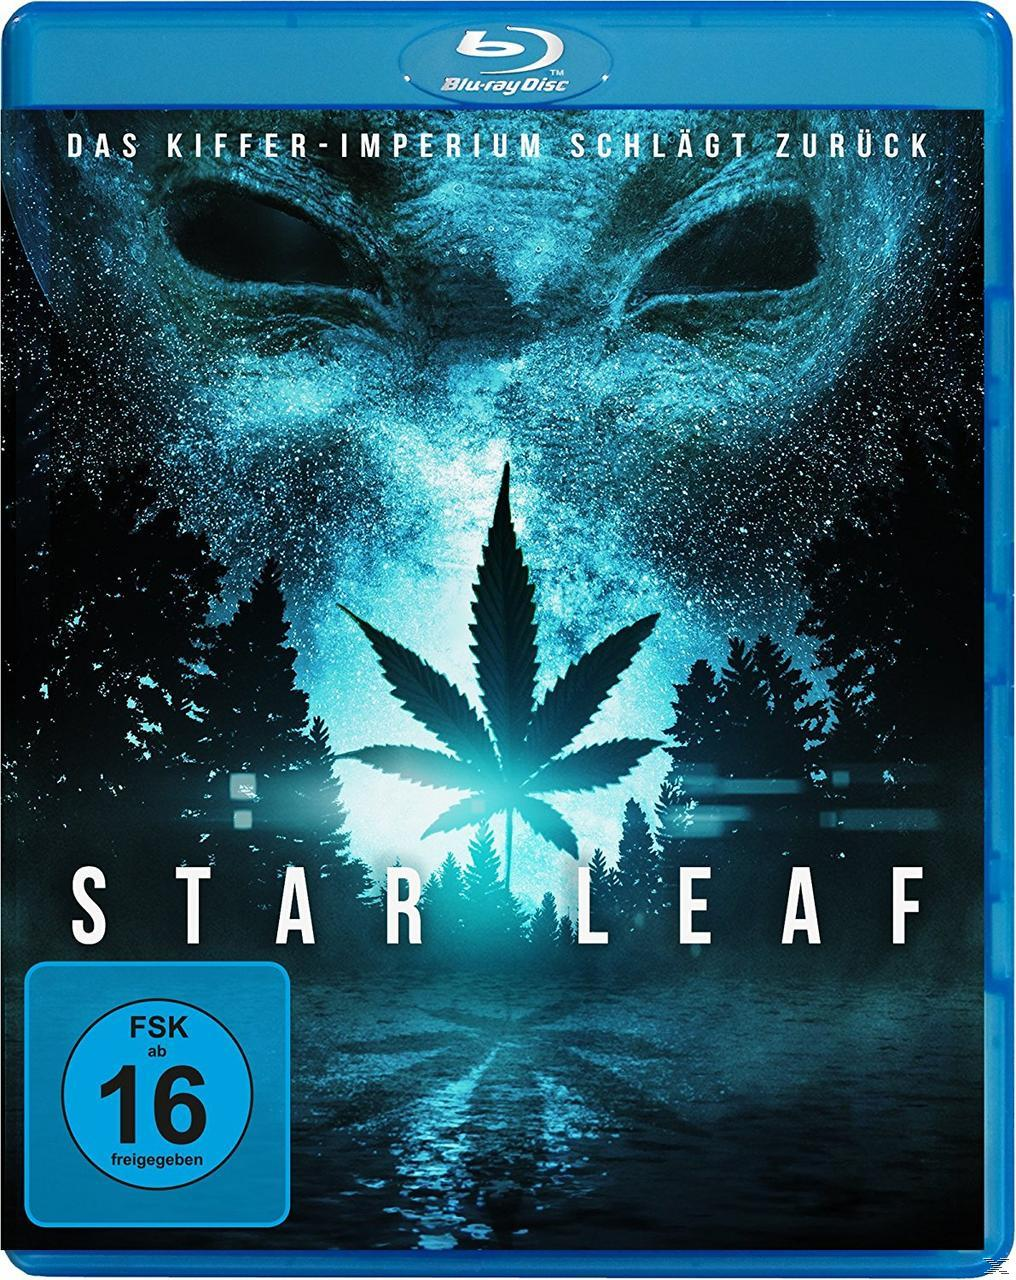 Kiffer-Imperium Star schlägt Blu-ray - zurück Leaf Das